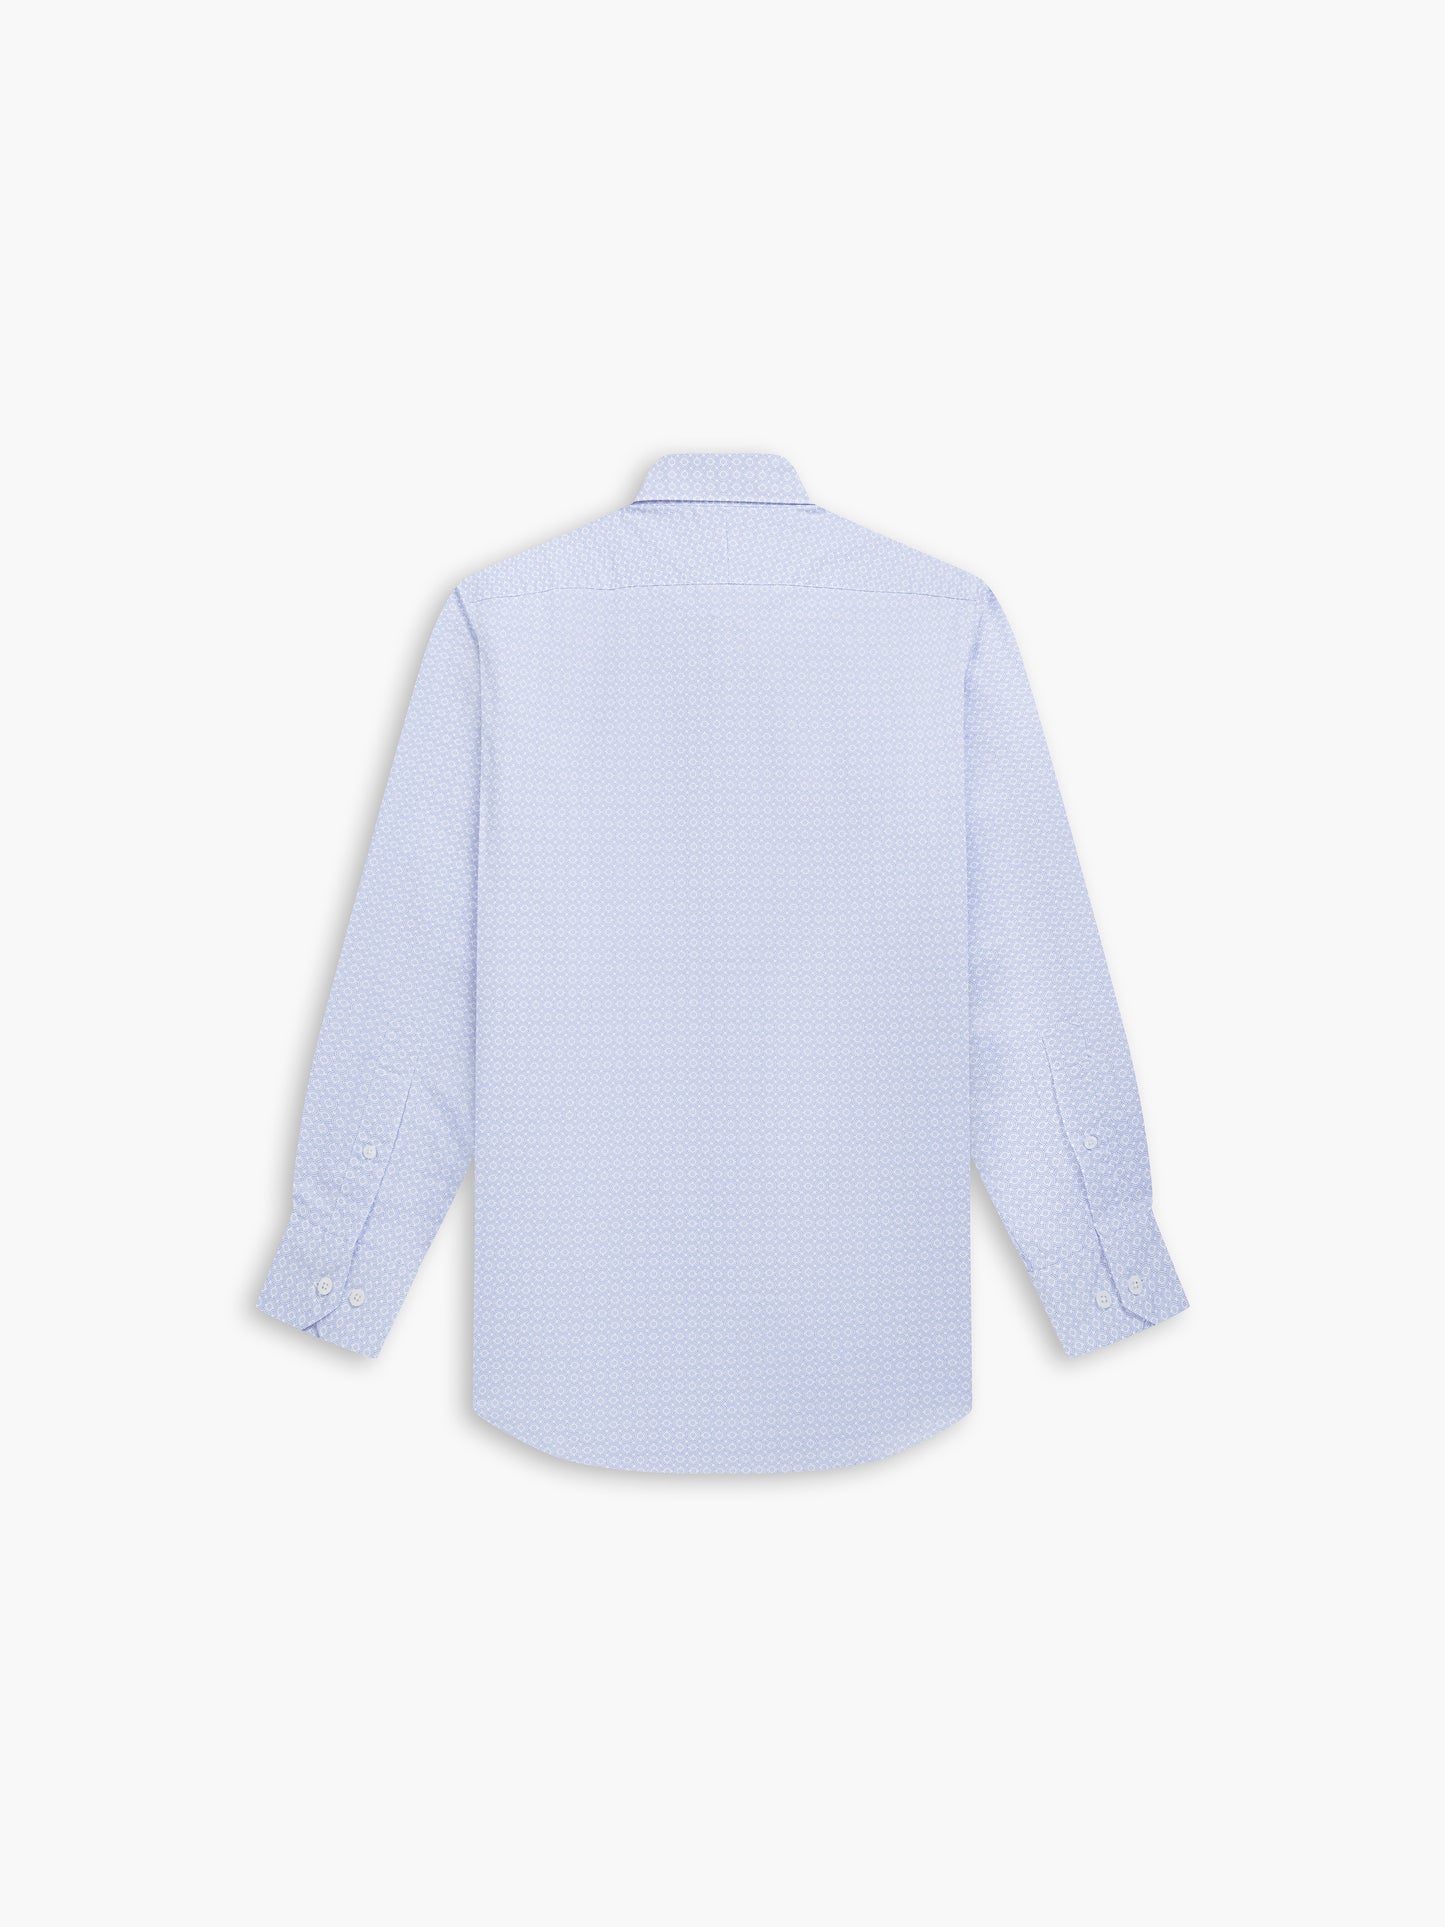 Blue Geometric Print Twill Slim Fit Single Cuff Classic Collar Shirt